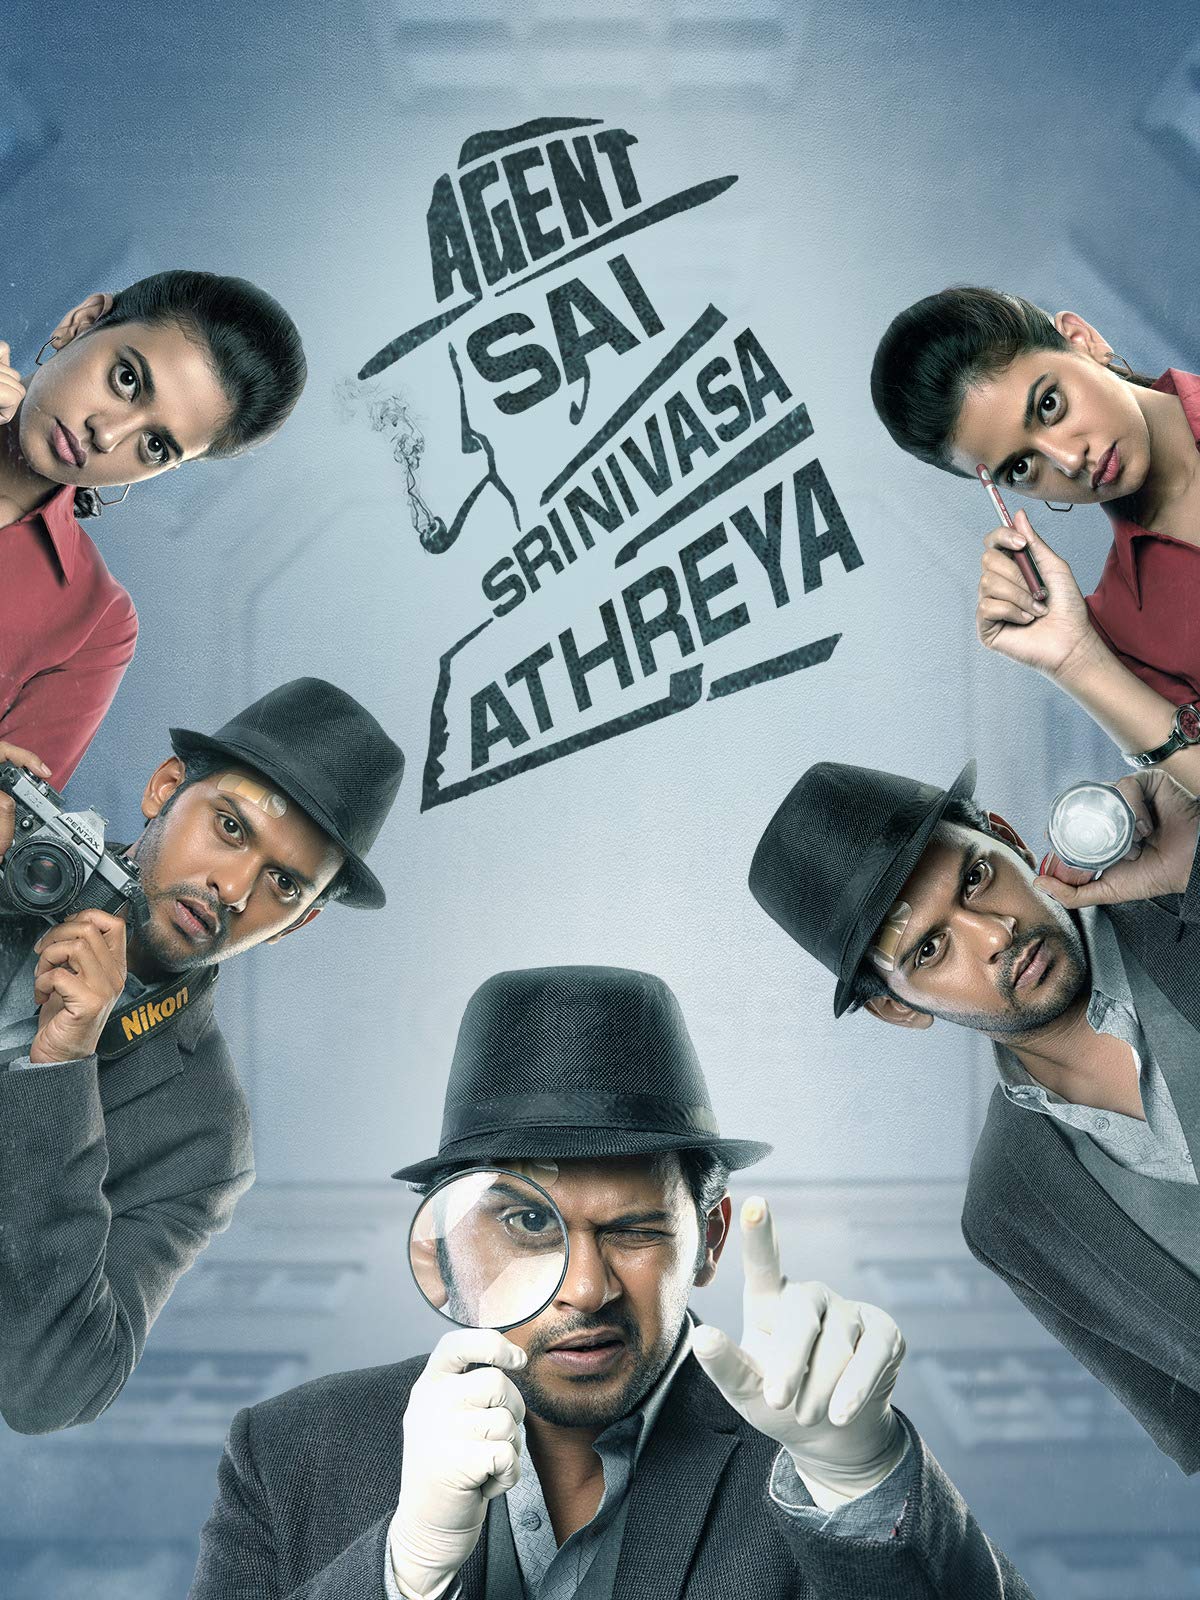 shanthanam Starring agent kannayiram movie teaser released